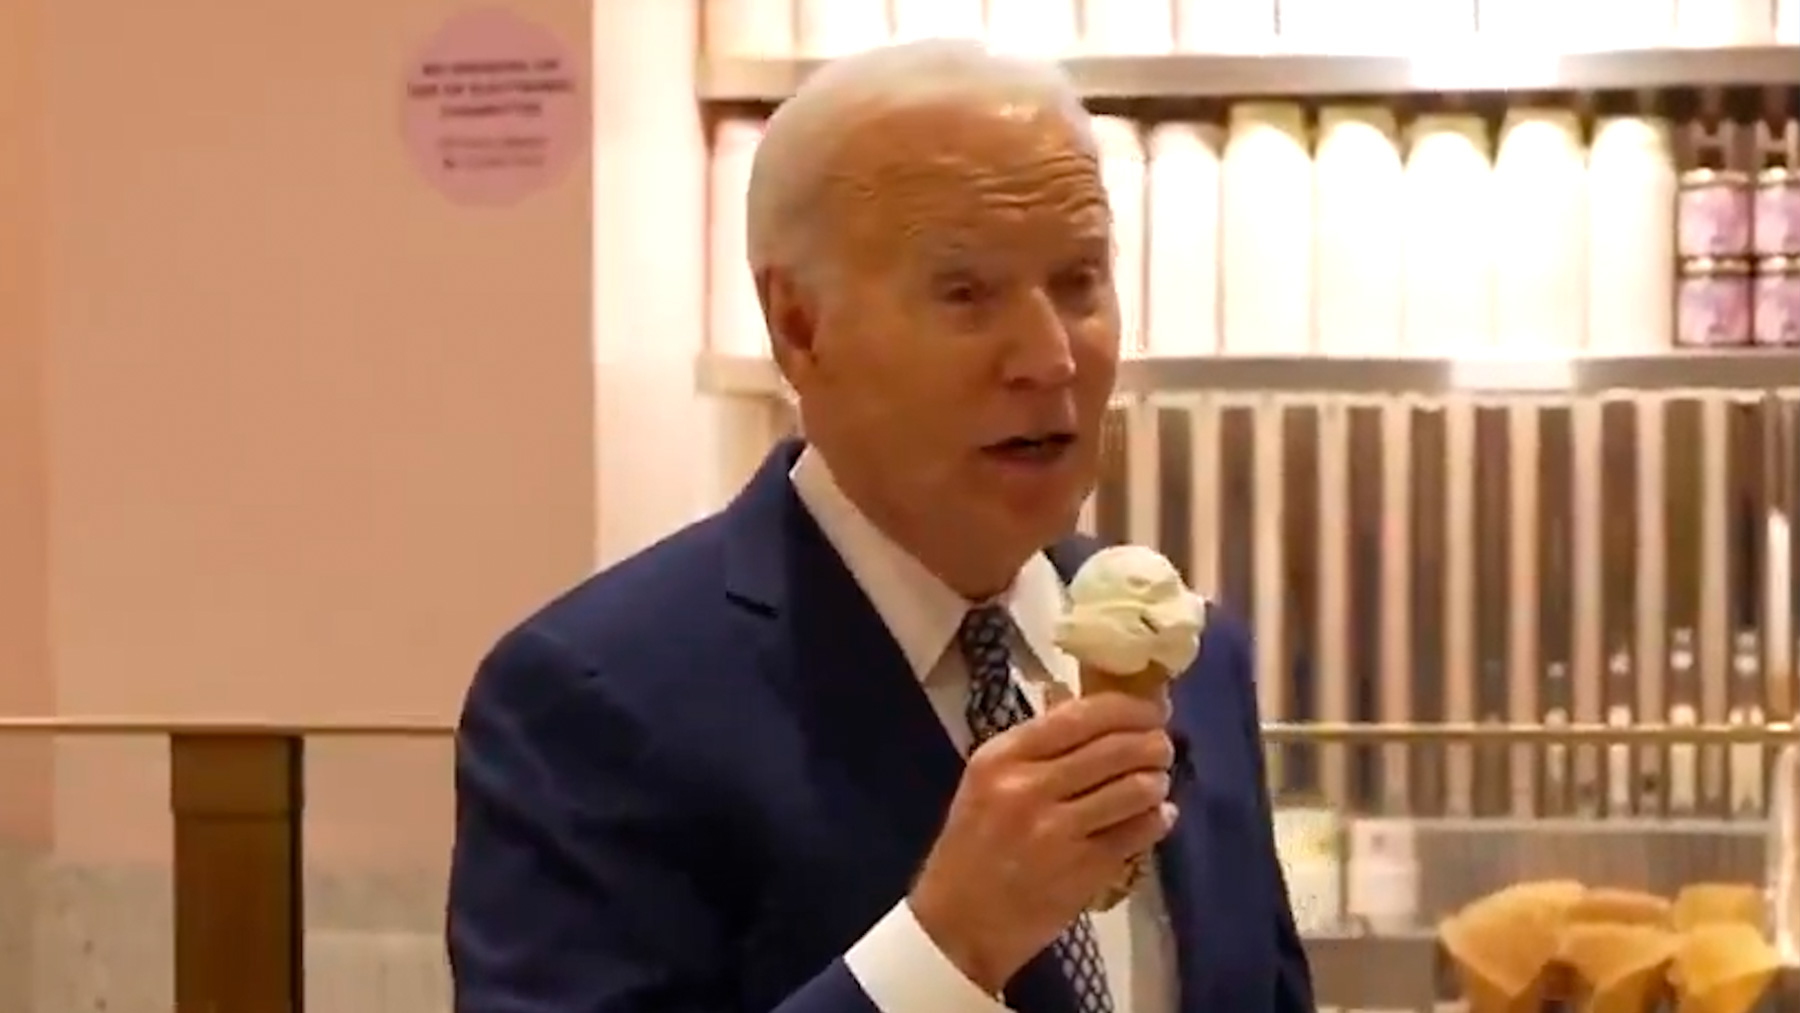 Biden comiendo un helado.